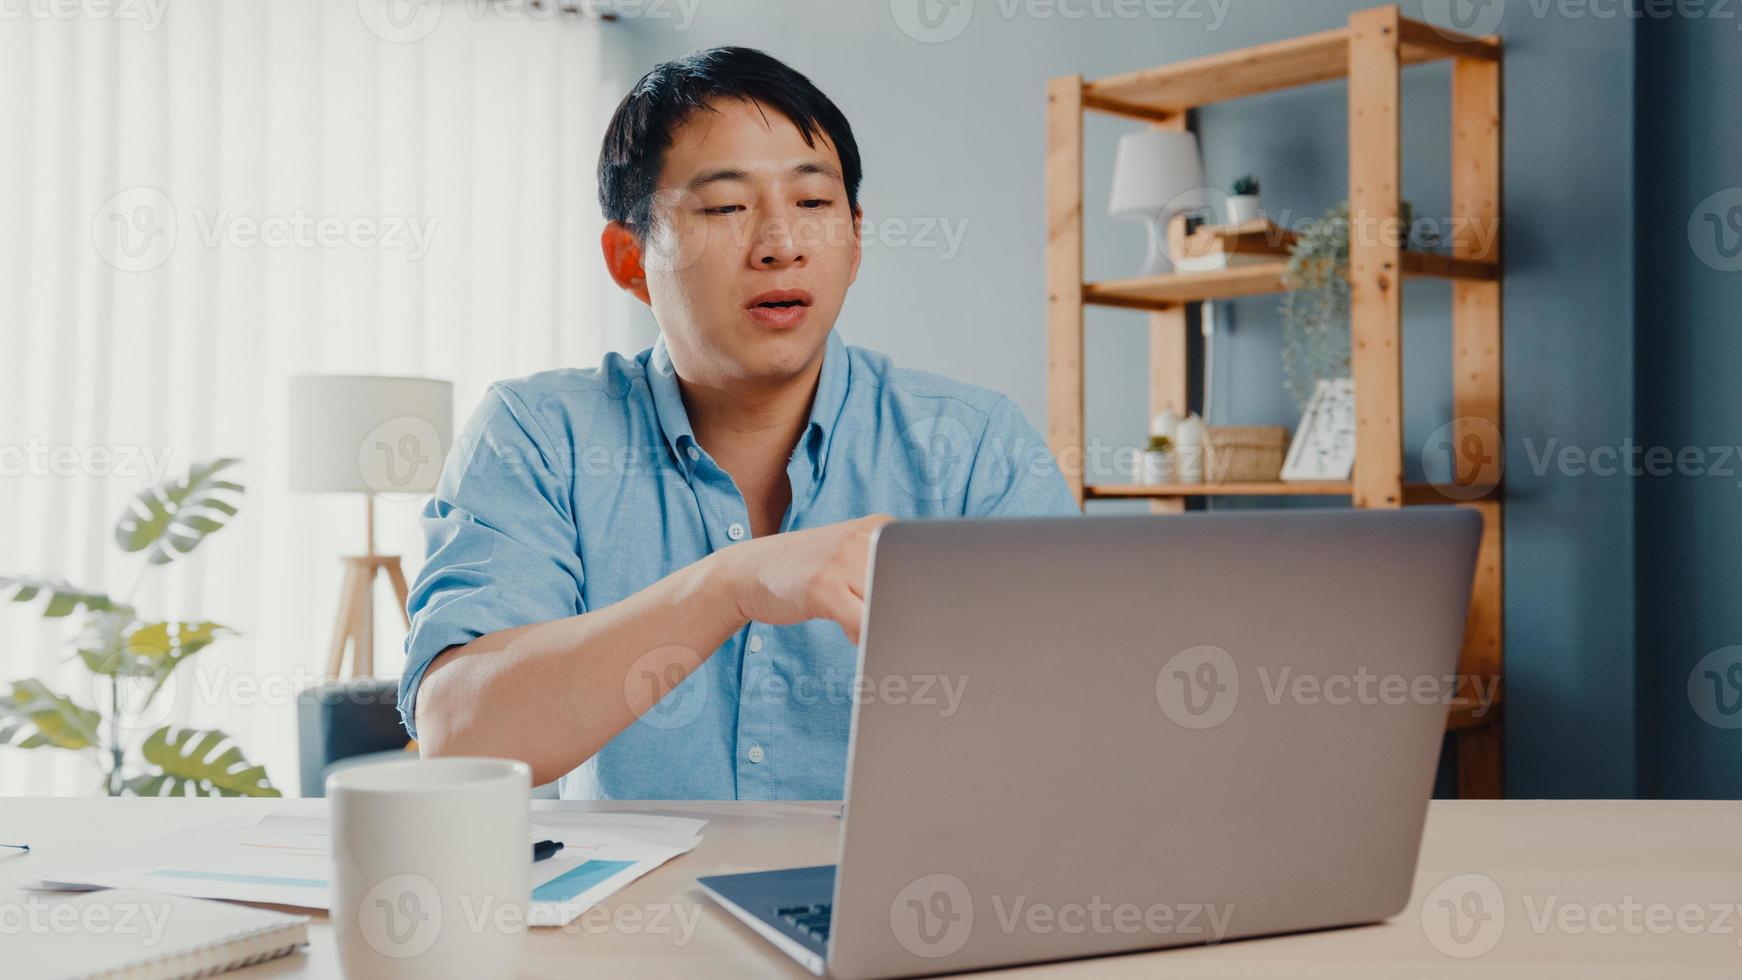 jonge Aziatische zakenman die laptop gebruikt, praat met collega's over een plan in een videogesprek terwijl hij slim vanuit huis in de woonkamer werkt. zelfisolatie, sociale afstand, quarantaine voor preventie van het coronavirus. foto